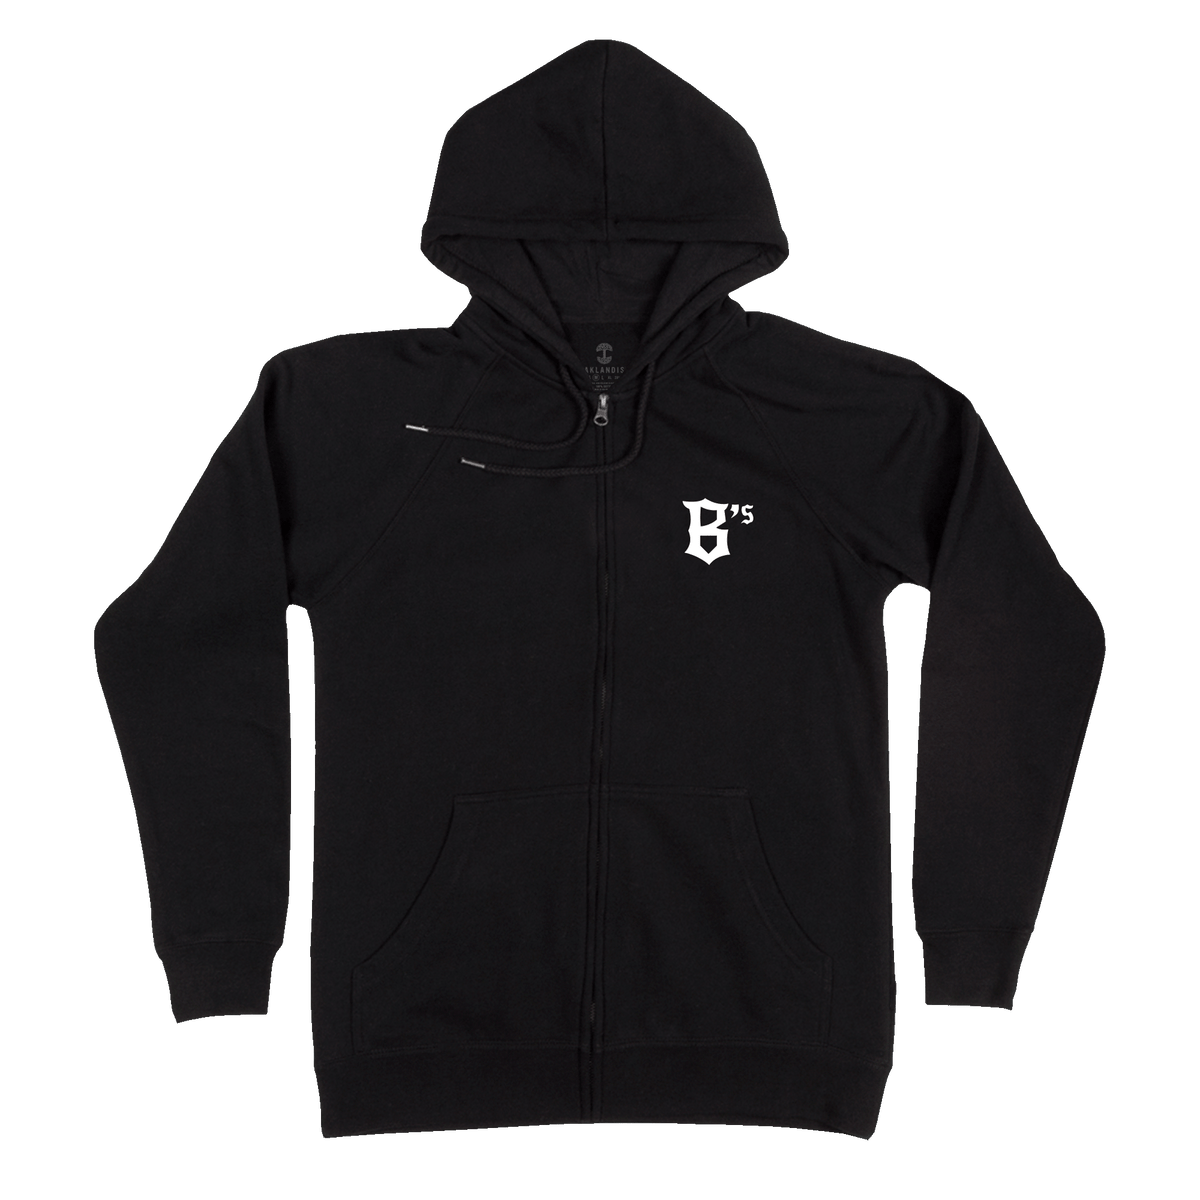 Zip Up Hooded Sweatshirt - Oakland Ballers Logos, Black